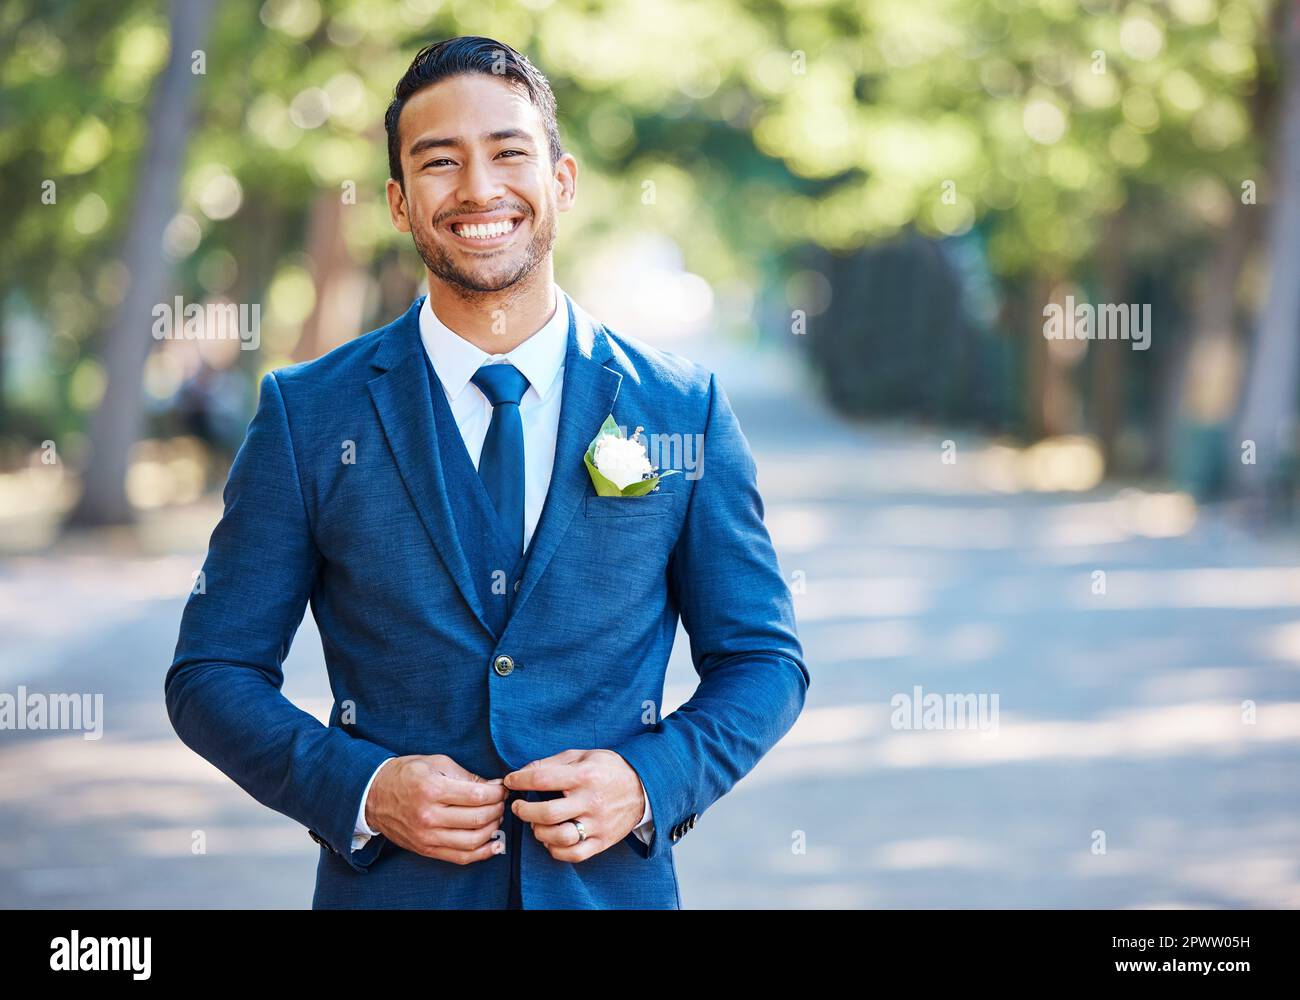 Beau marié portant un costume bleu avec une chemise blanche et une cravate.  Soucoupe sa veste tout en étant debout à l'extérieur par temps ensoleillé  Photo Stock - Alamy